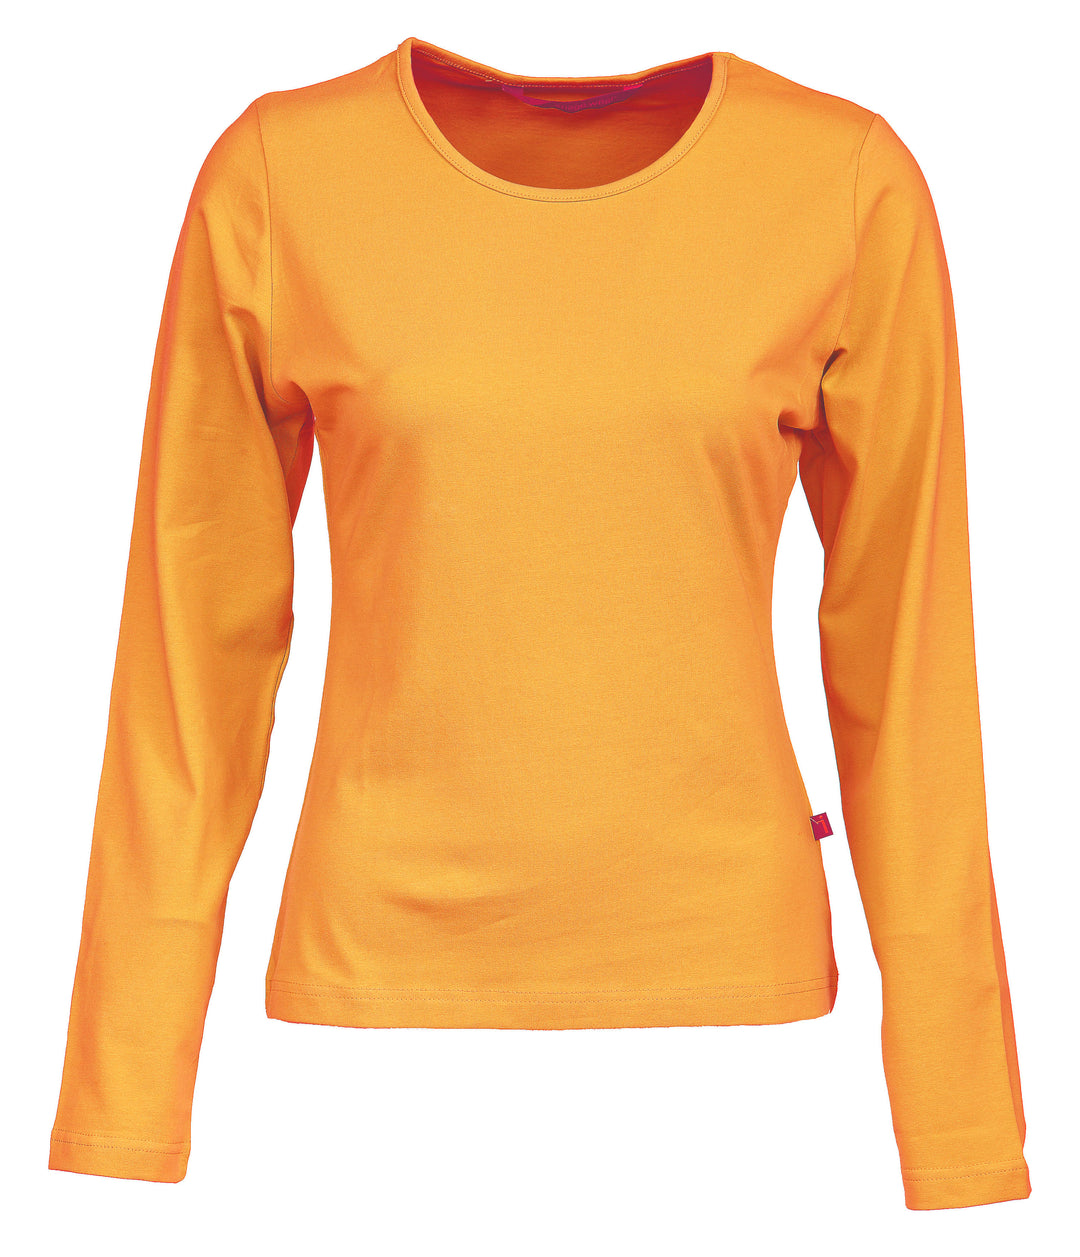 Oranssin värinen naisten pitkähihainen paita. Joustavaa trikoomateriaalia. Hieman vartalonmyötäinen. O-pääntie.